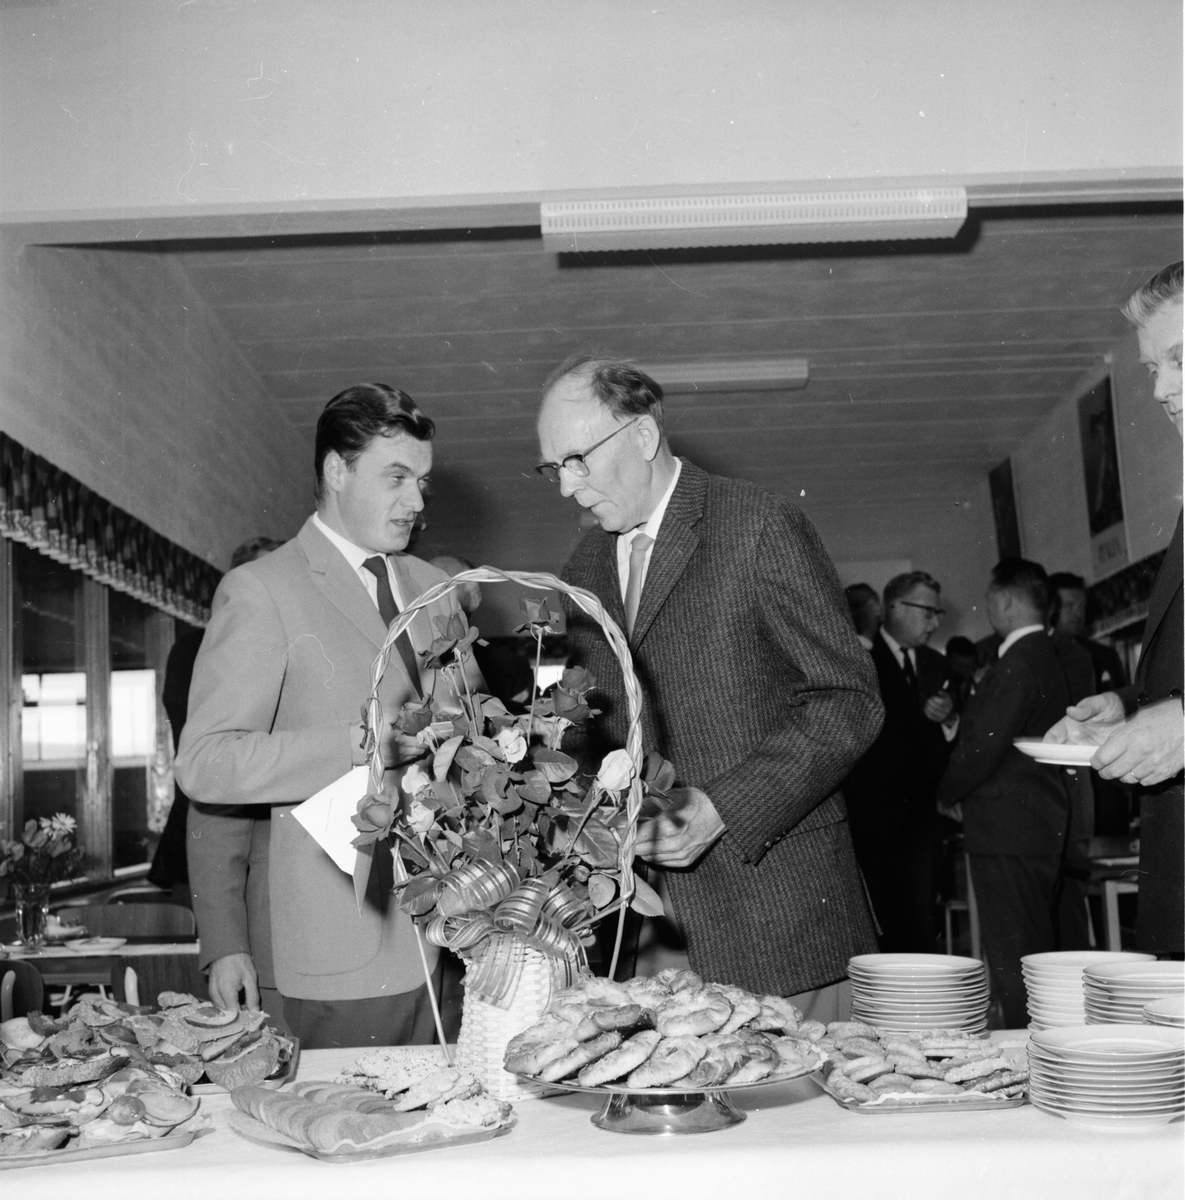 Edsbyns träförädling 50- årsfest.
21/9 1962